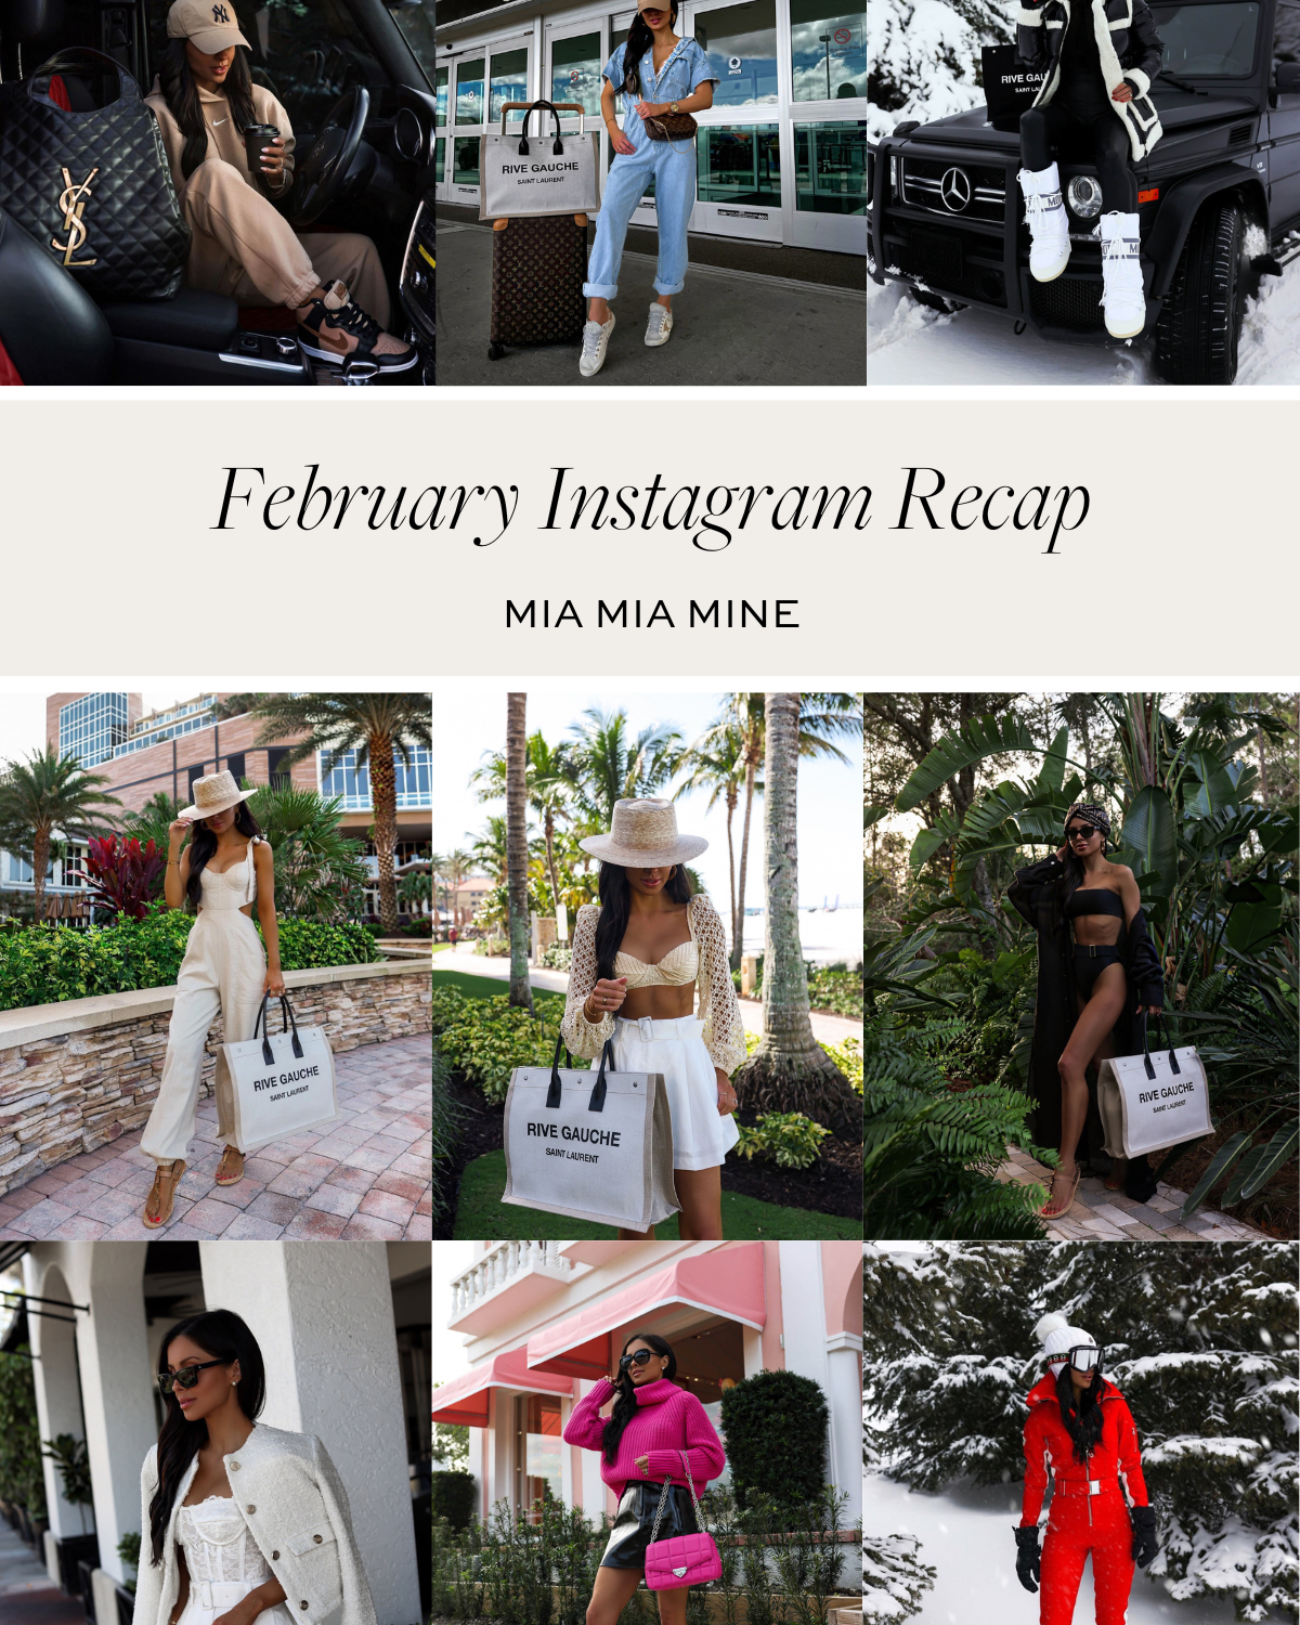 February Instagram Recap